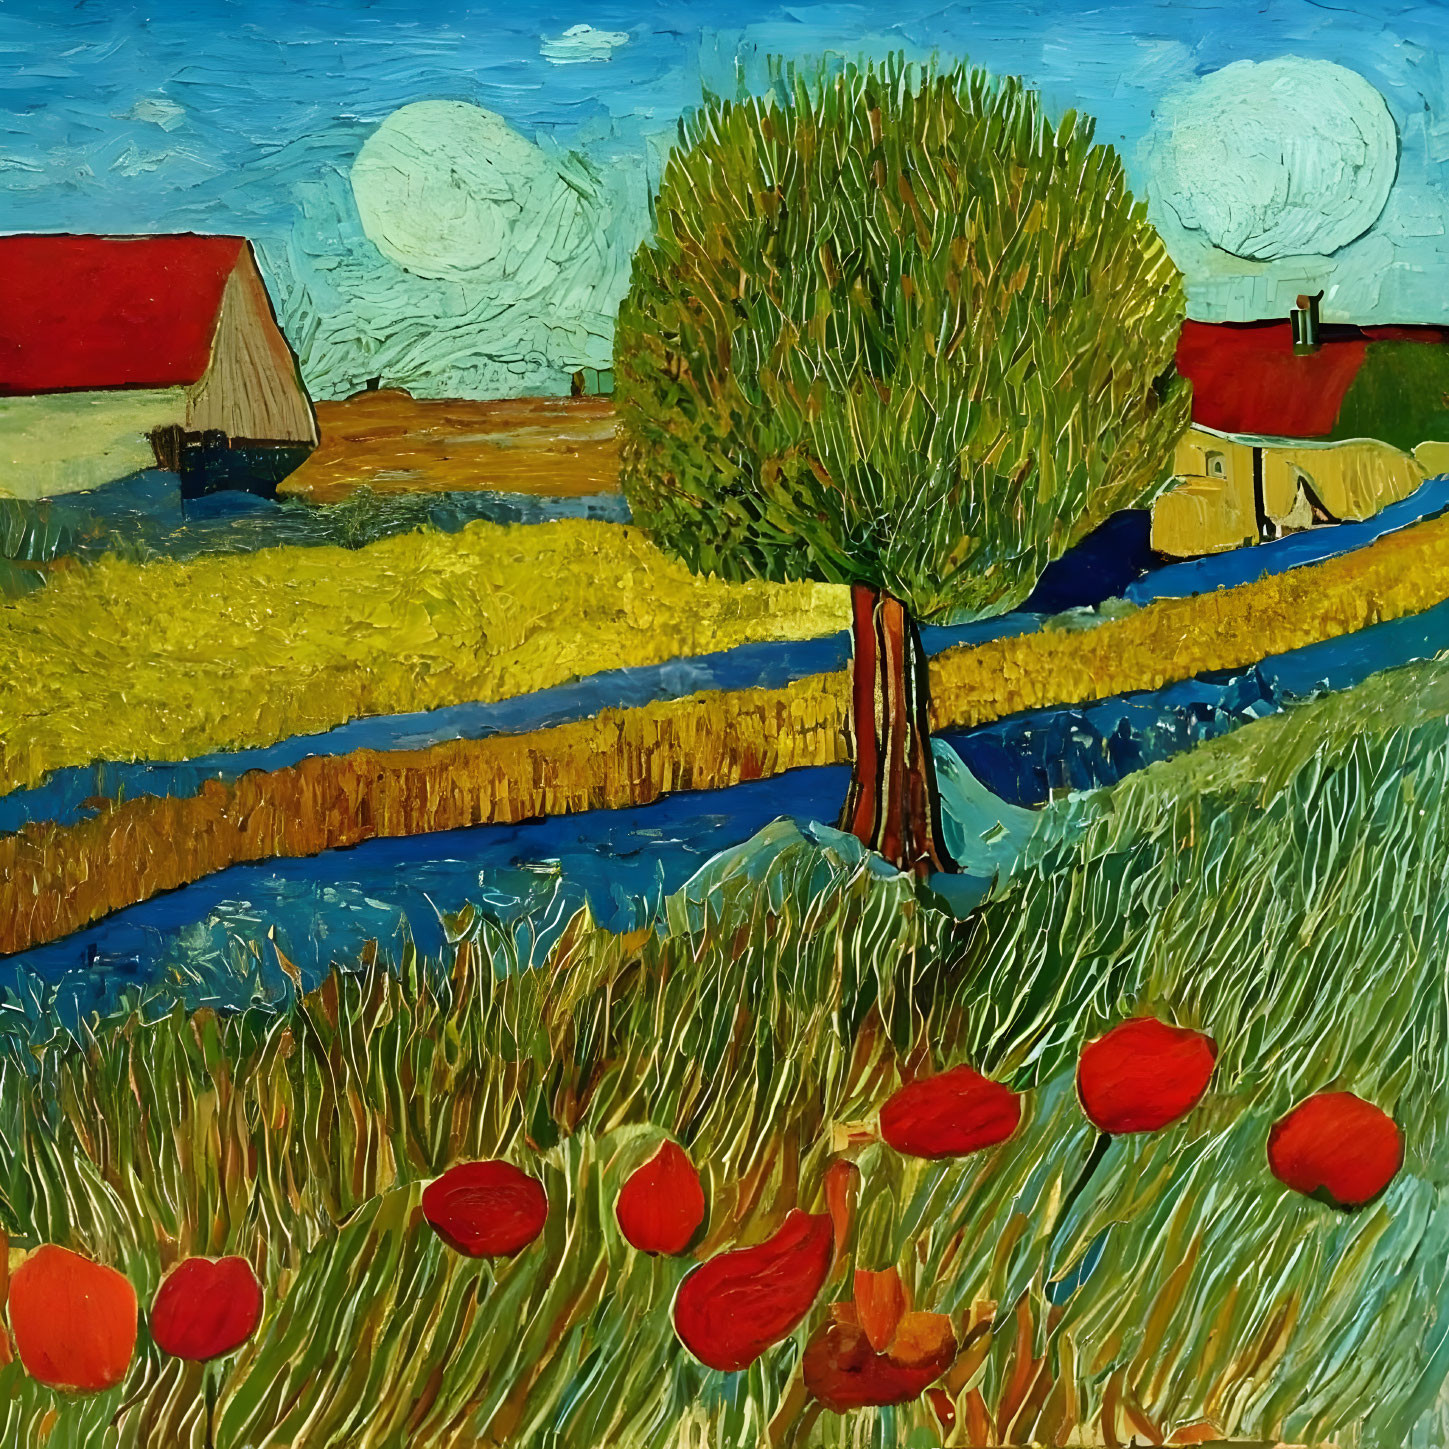 Landschaft im Stil van Gogh und Gauguin